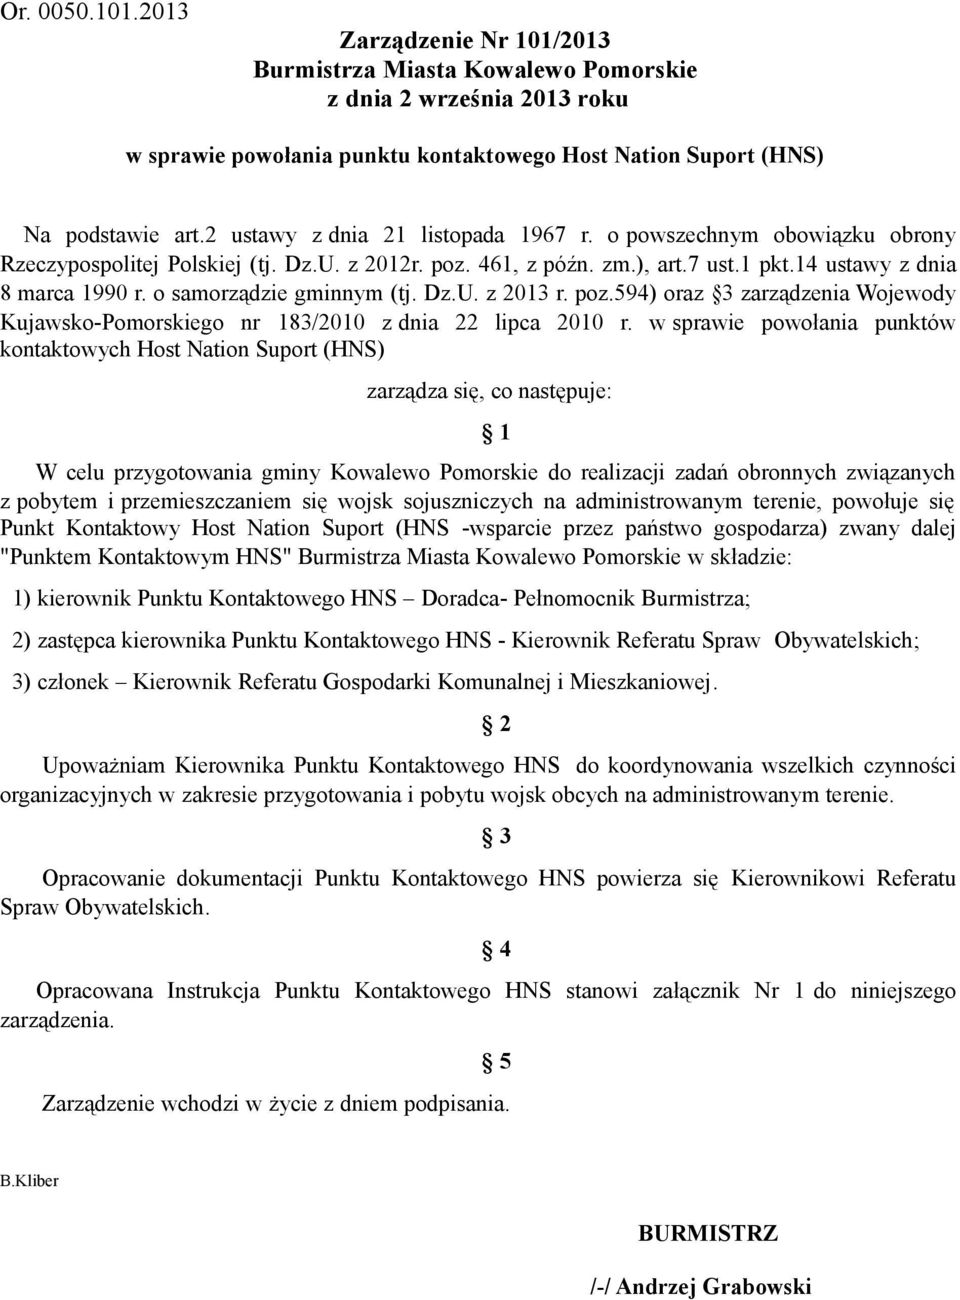 o samorządzie gminnym (tj. Dz.U. z 2013 r. poz.594) oraz 3 zarządzenia Wojewody Kujawsko-Pomorskiego nr 183/2010 z dnia 22 lipca 2010 r.